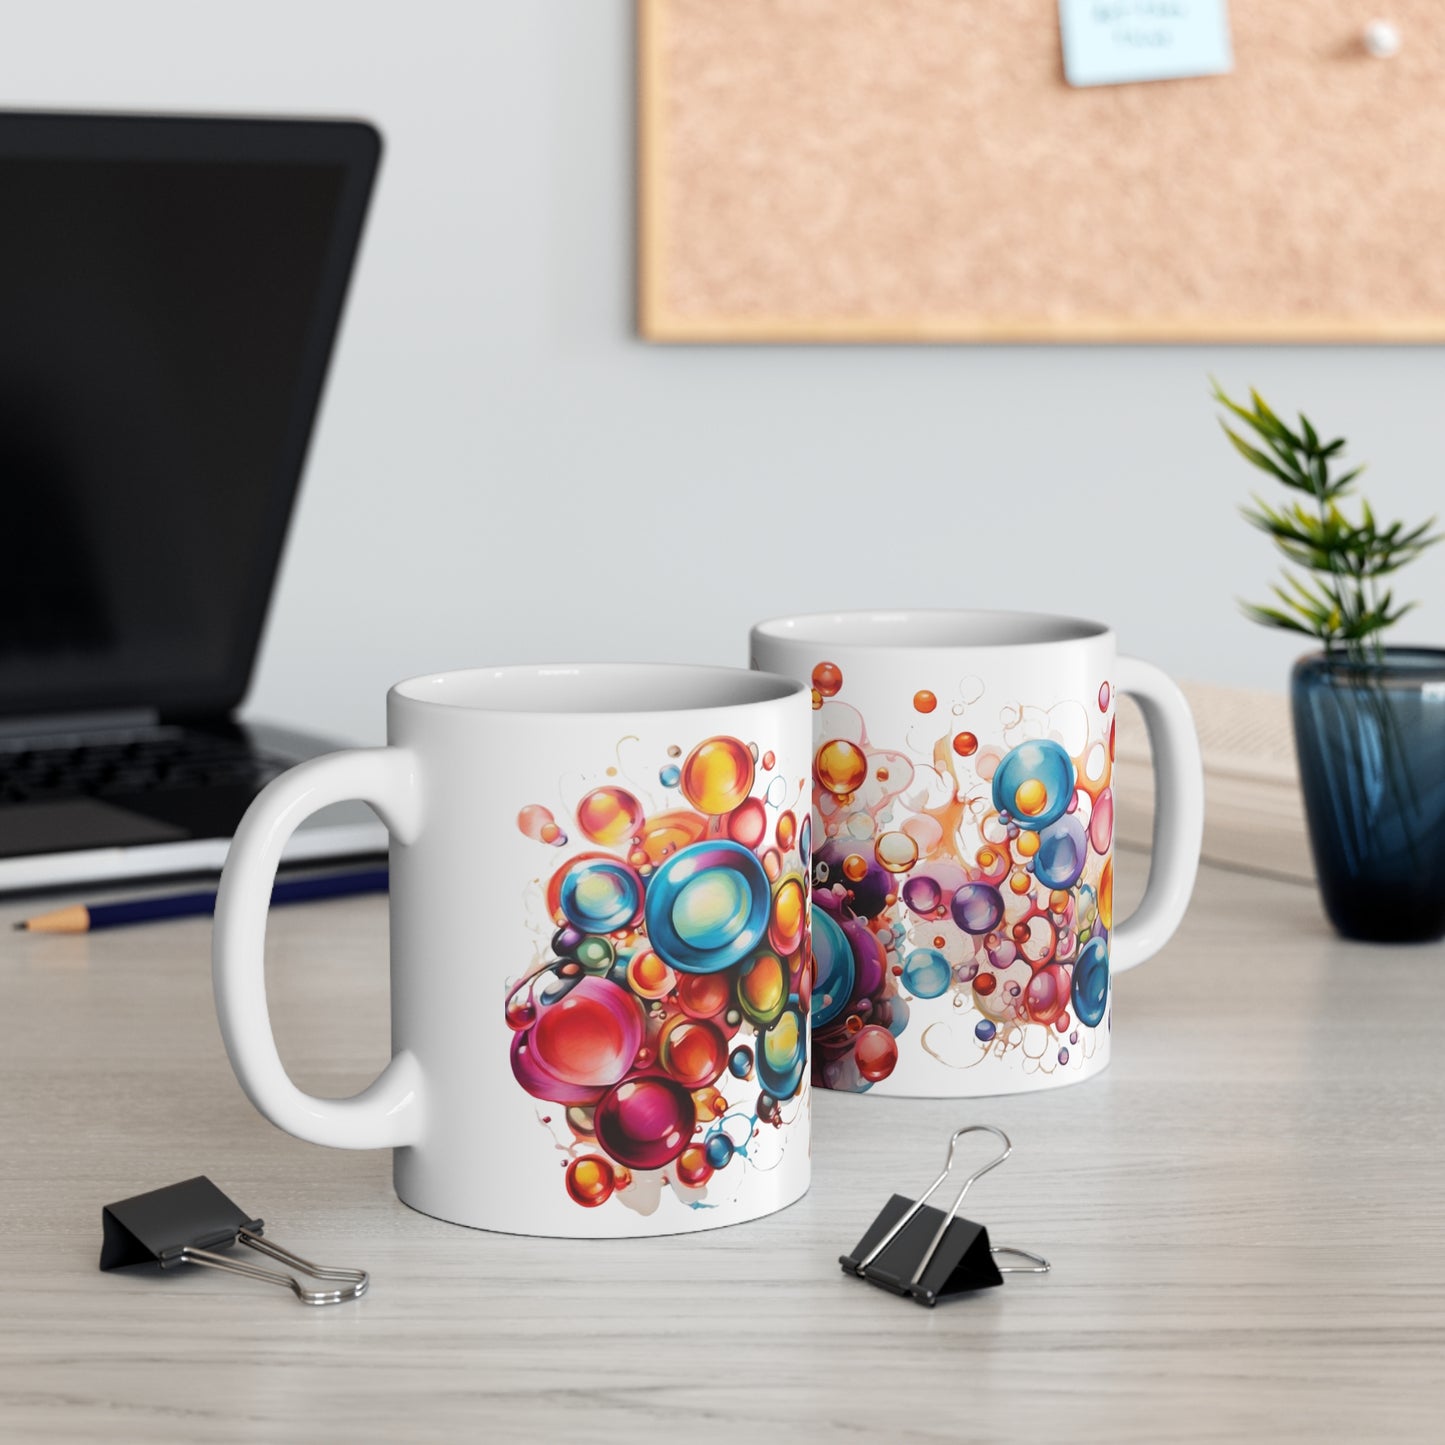 Messy Colourful Bubbles Mug - Ceramic Coffee Mug 11oz